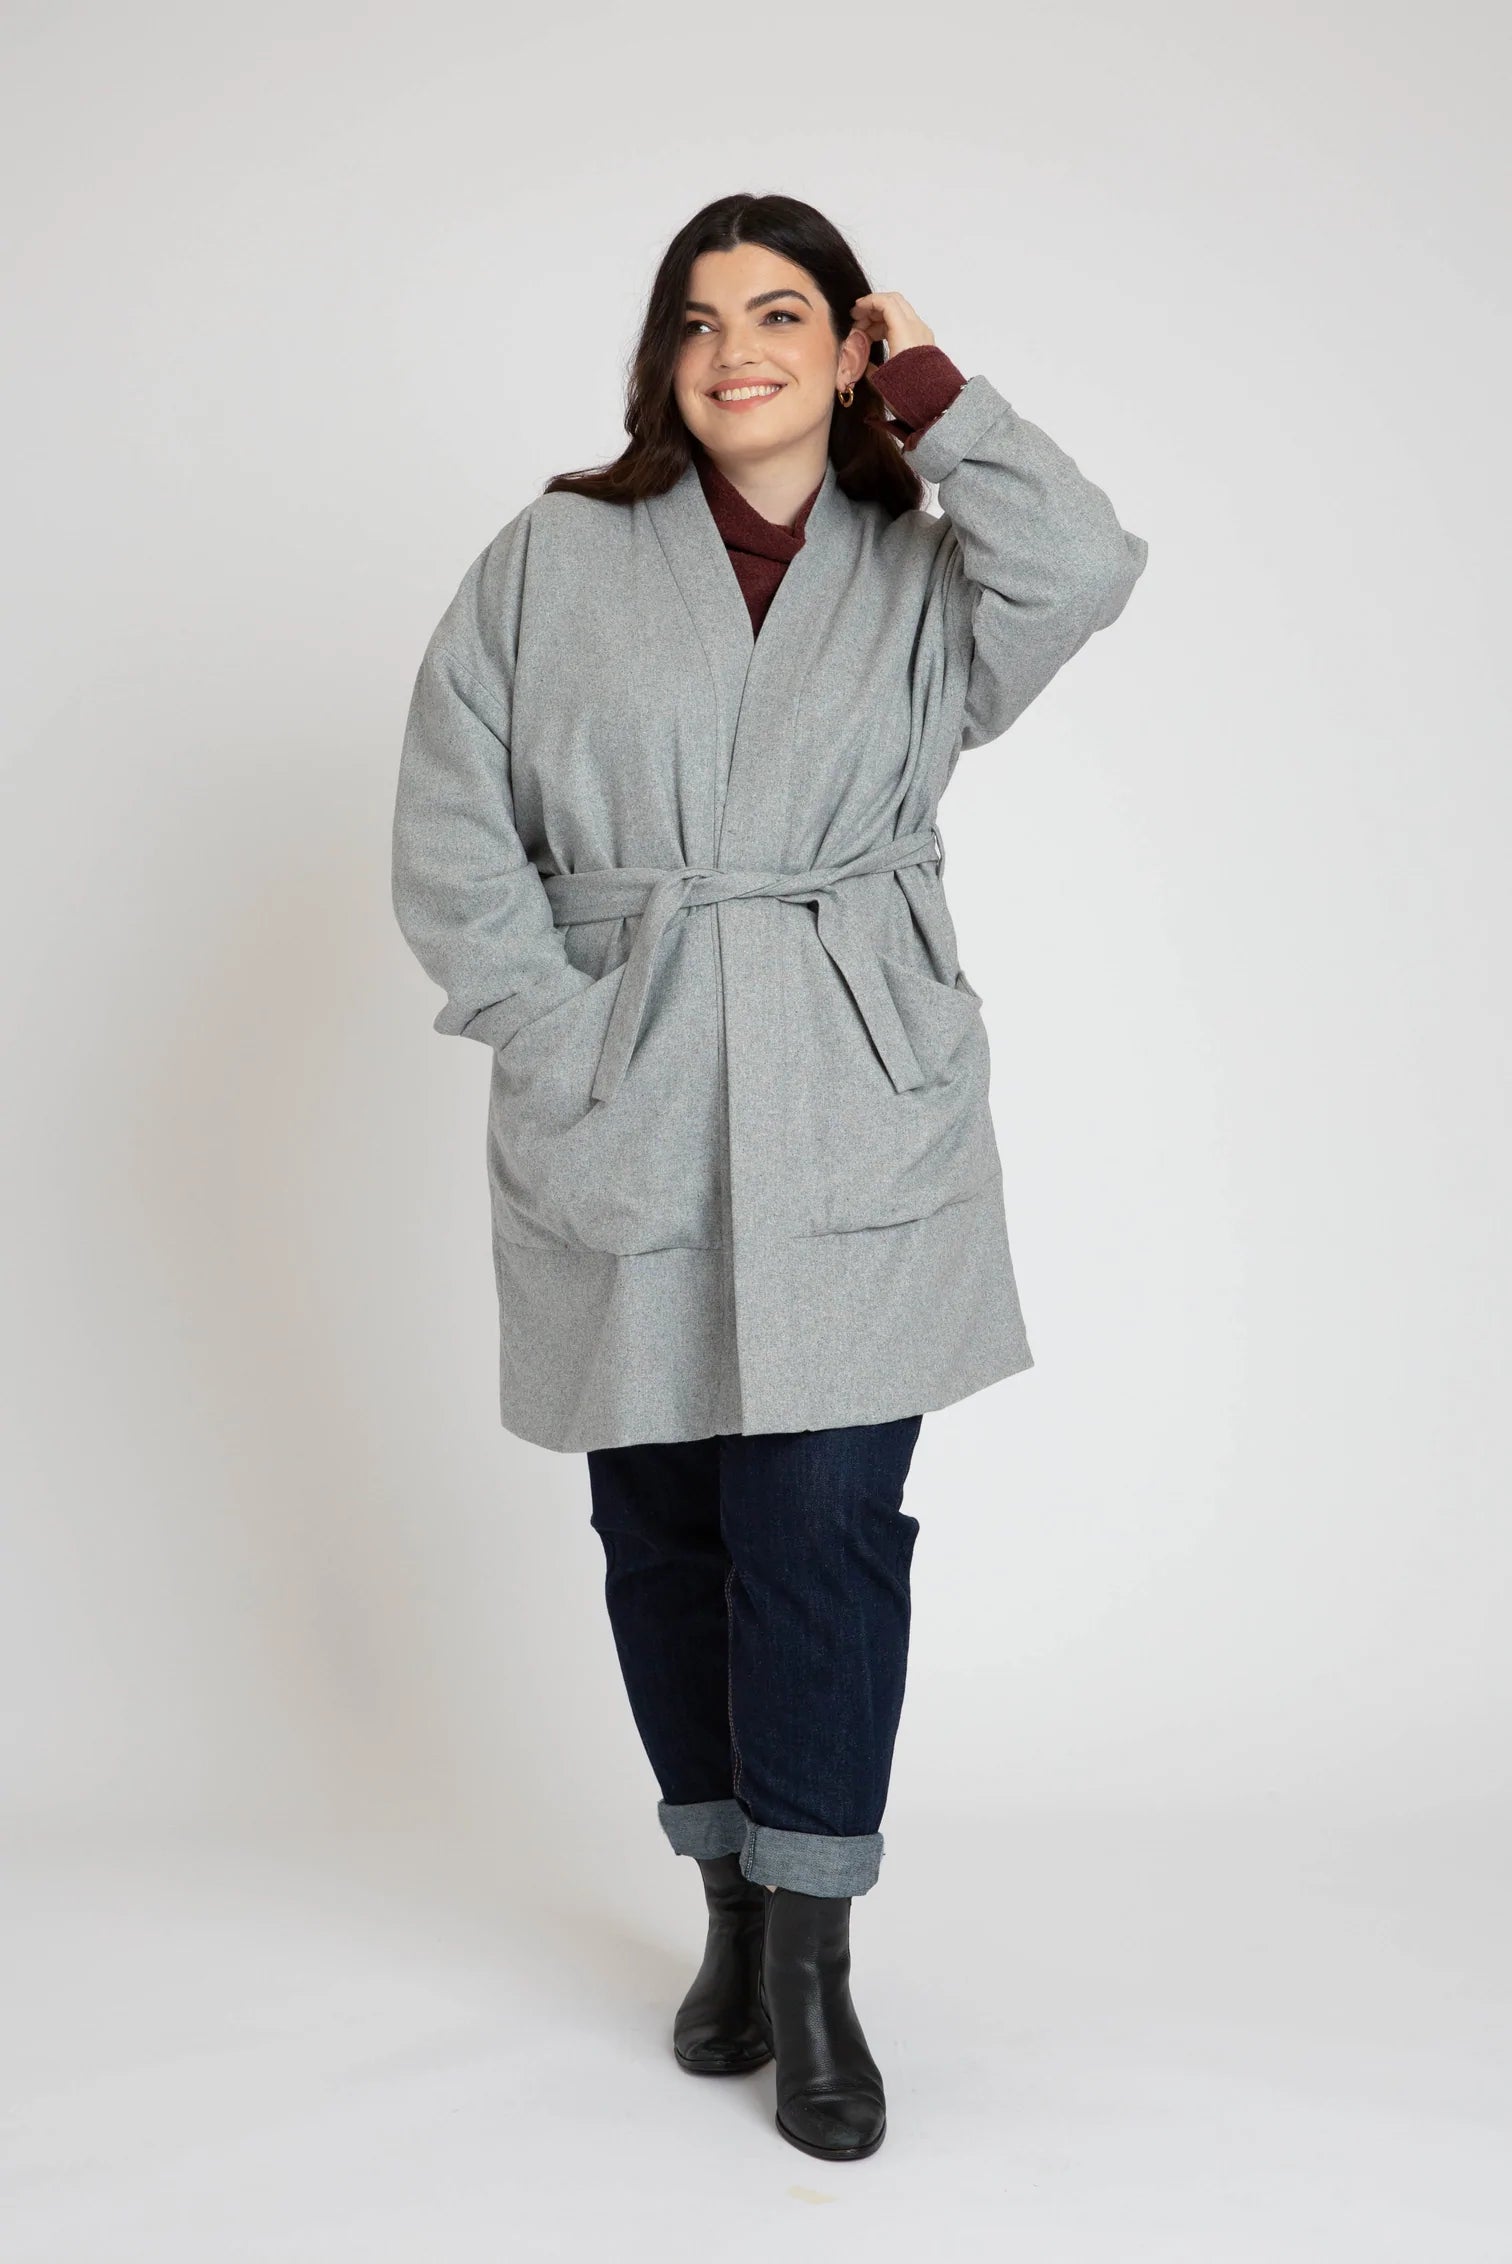 Hovea Jacket & Coat, Curve Range - Megan Nielsen